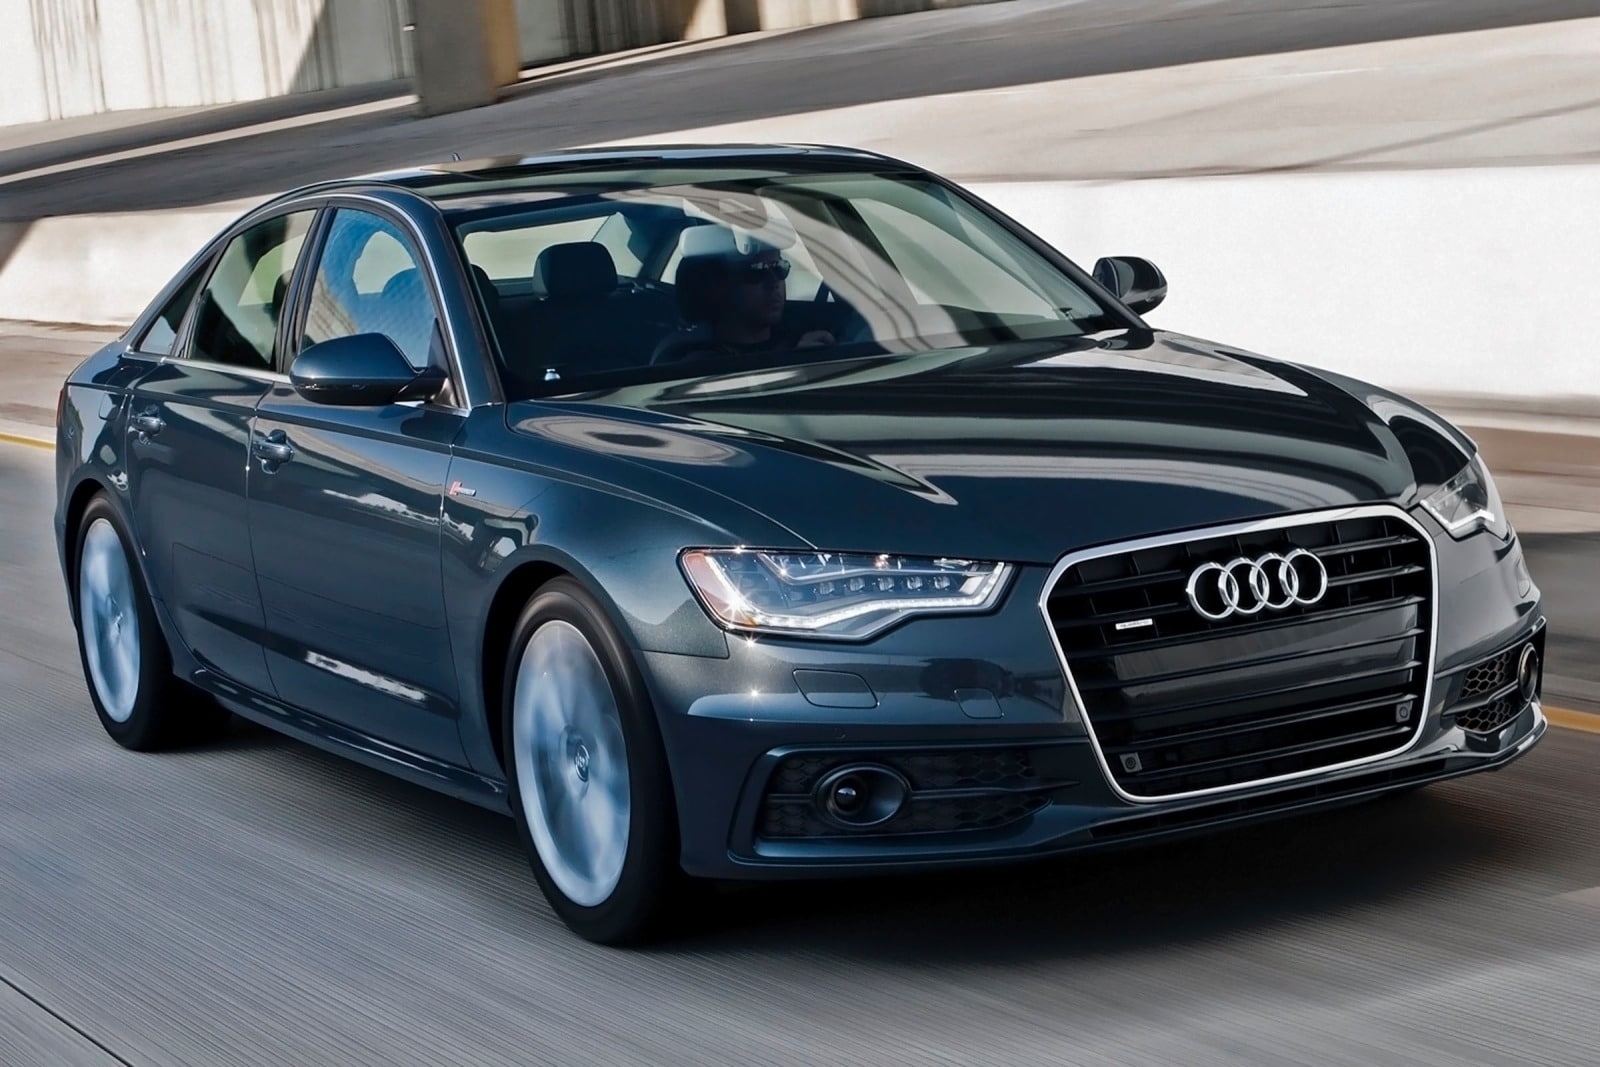 2013 Audi A6 Review & Ratings | Edmunds